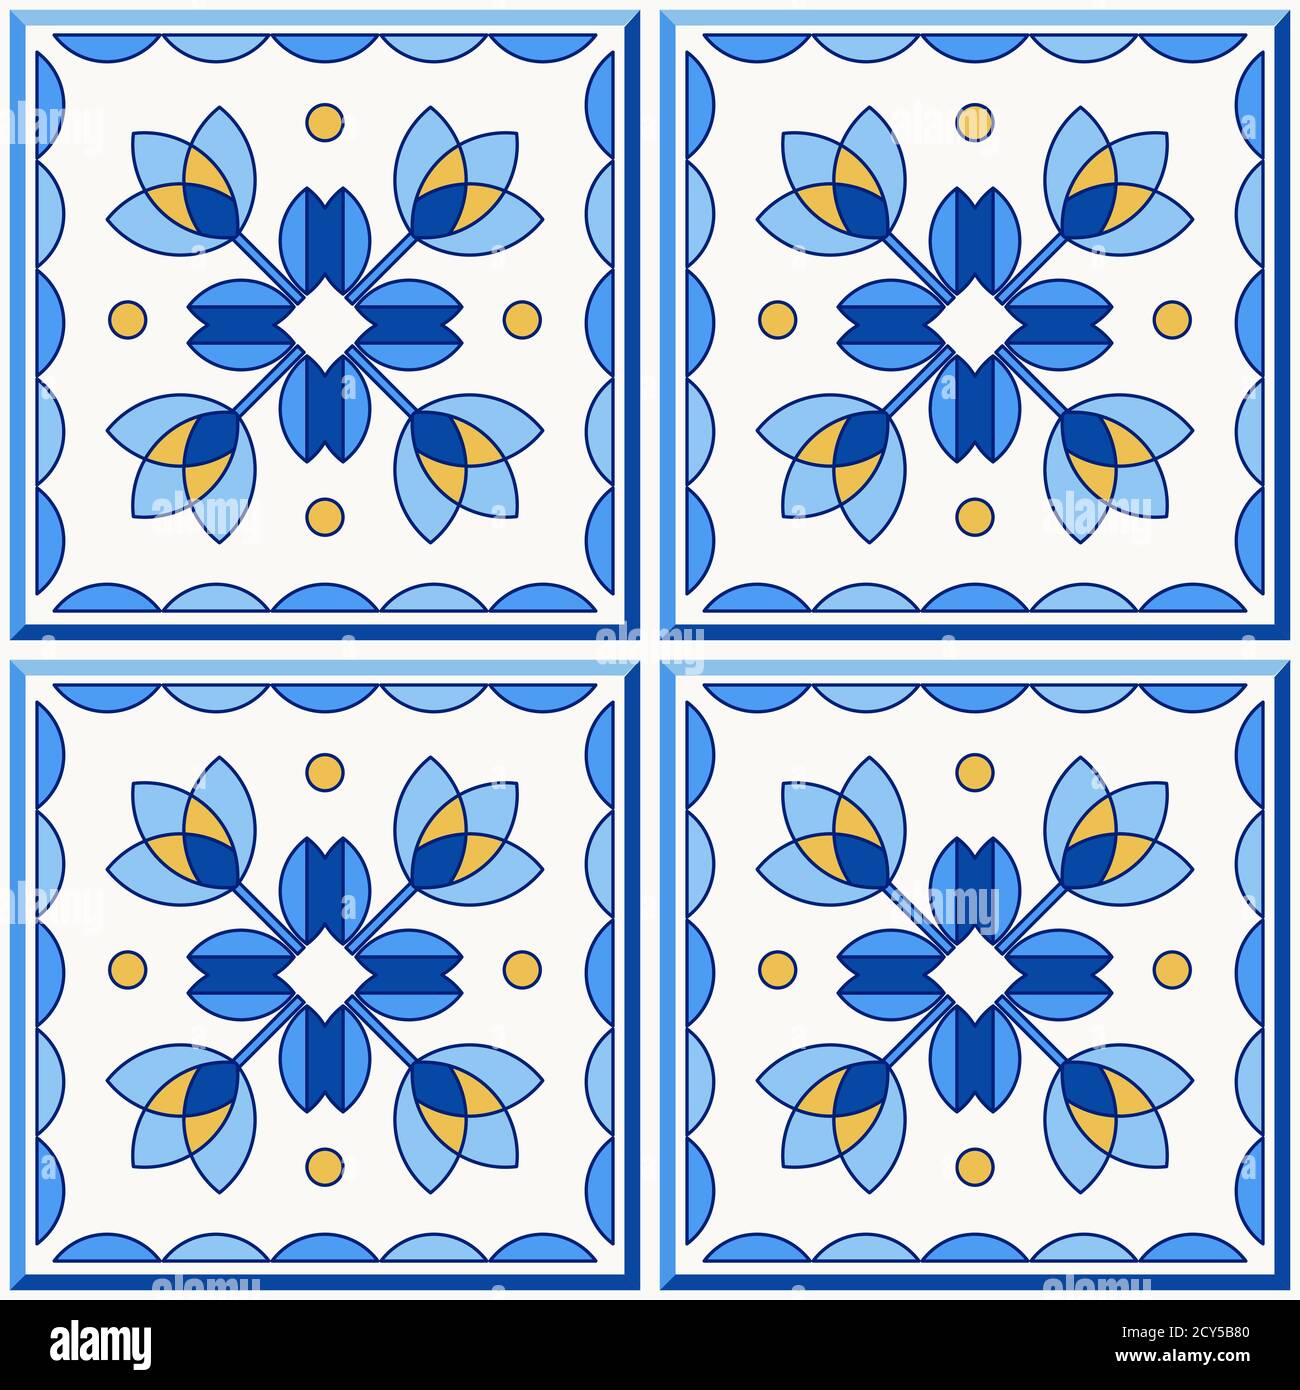 Portugal traditionnel Lisbonne azulejo carreaux de céramique. Illustration vectorielle. Couleurs jaune, bleu et blanc. Ensemble de quatre carreaux de plancher. Motif vectoriel transparent. Illustration de Vecteur